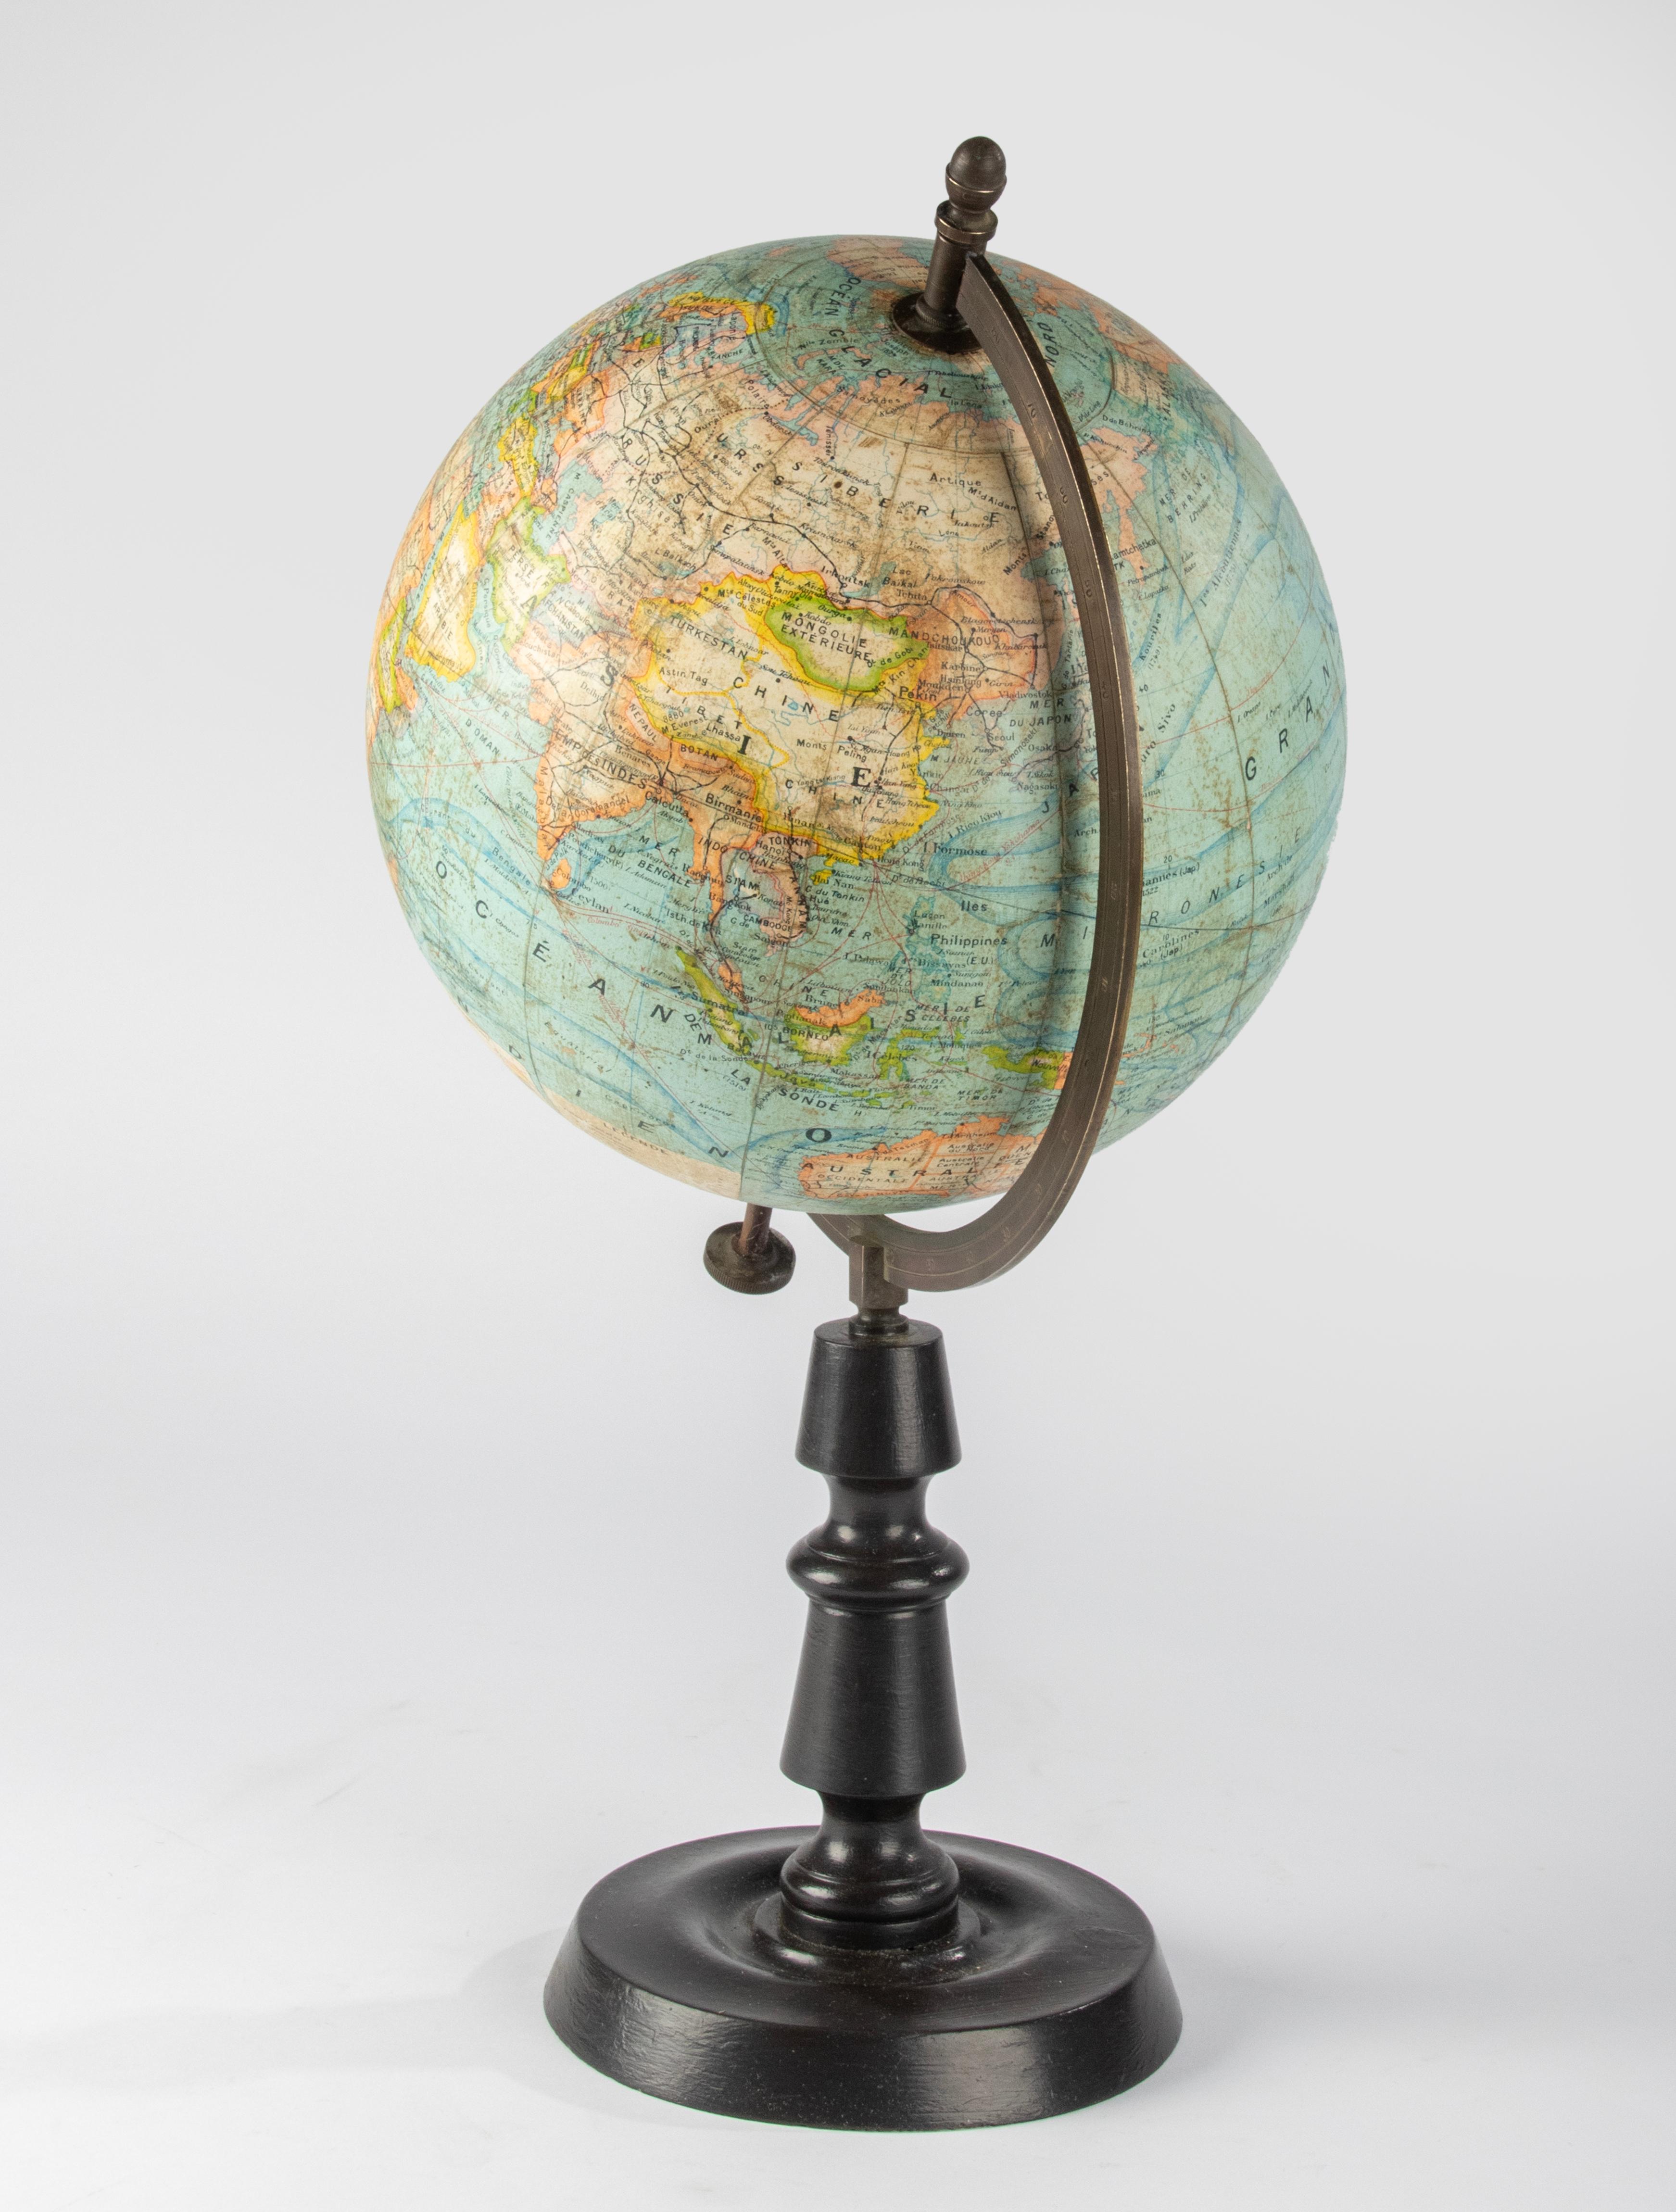 World Globe des späten 19. Jahrhunderts – herausgegeben von J. Forest Paris – Globe Terrestre 7